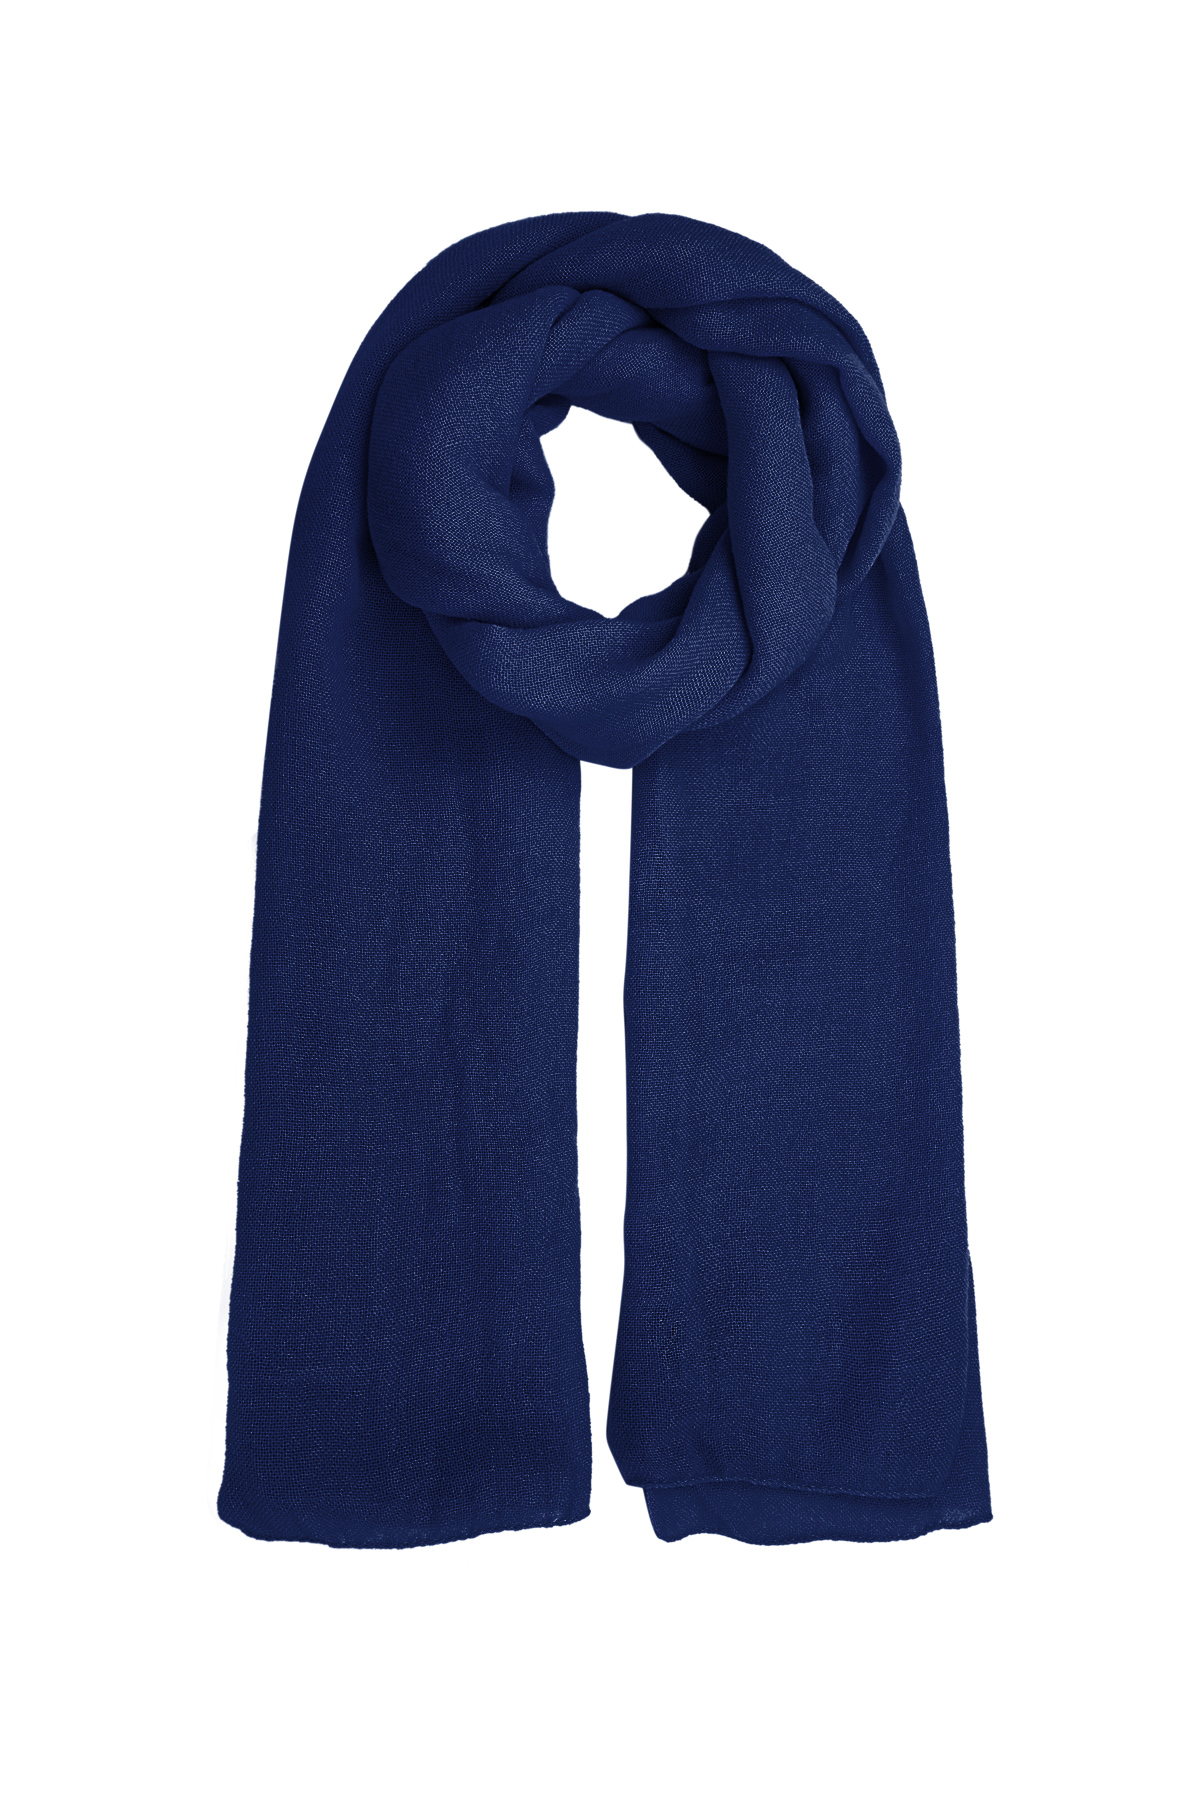 Sjaal effen kleur - donkerblauw 